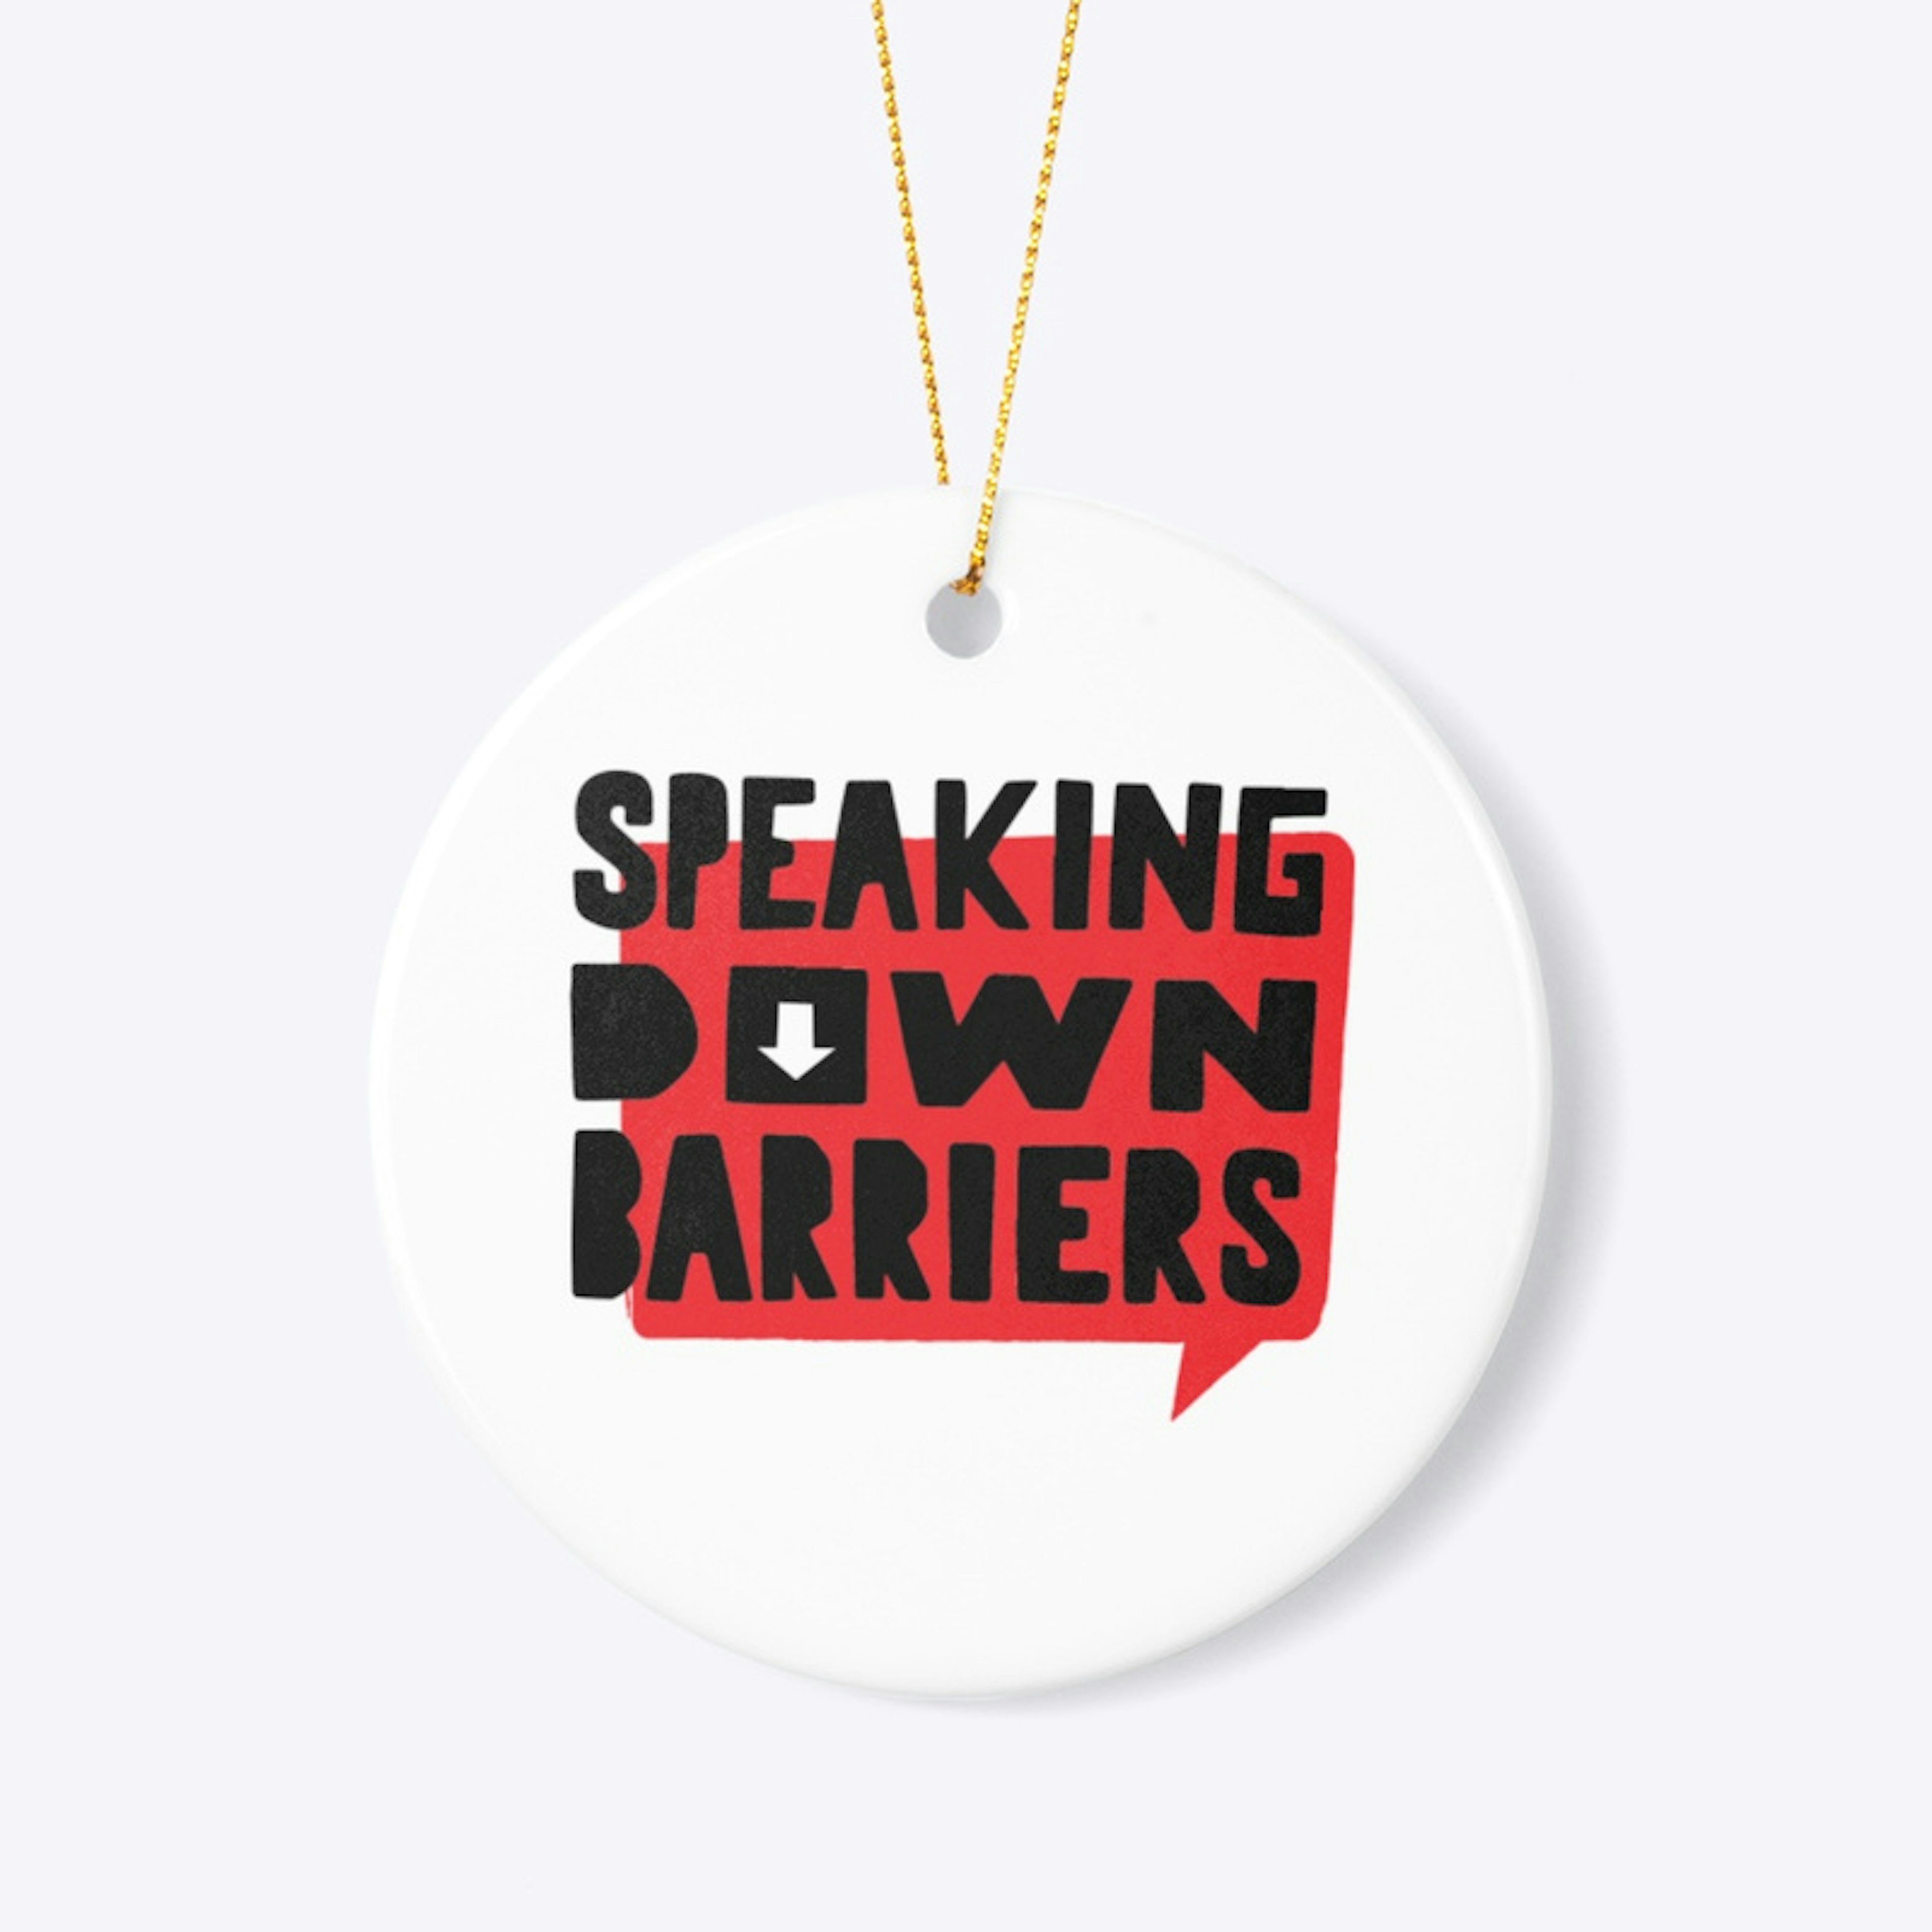 Speaking Down Barriers Pendant